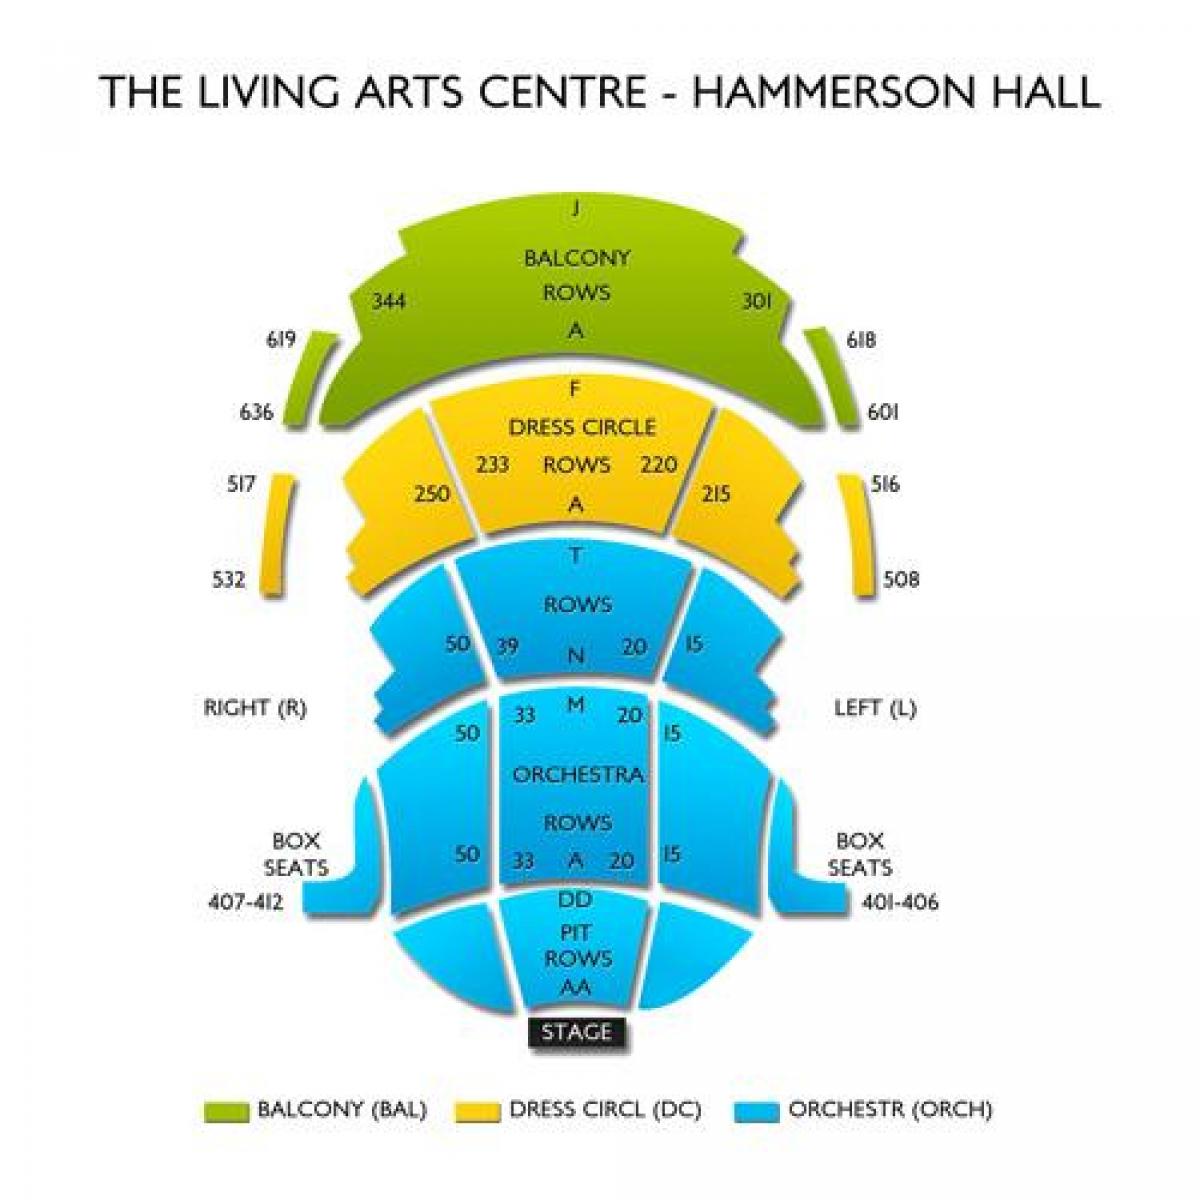 Harta e Gjallë e Arteve të Qendrës Hammerson hall